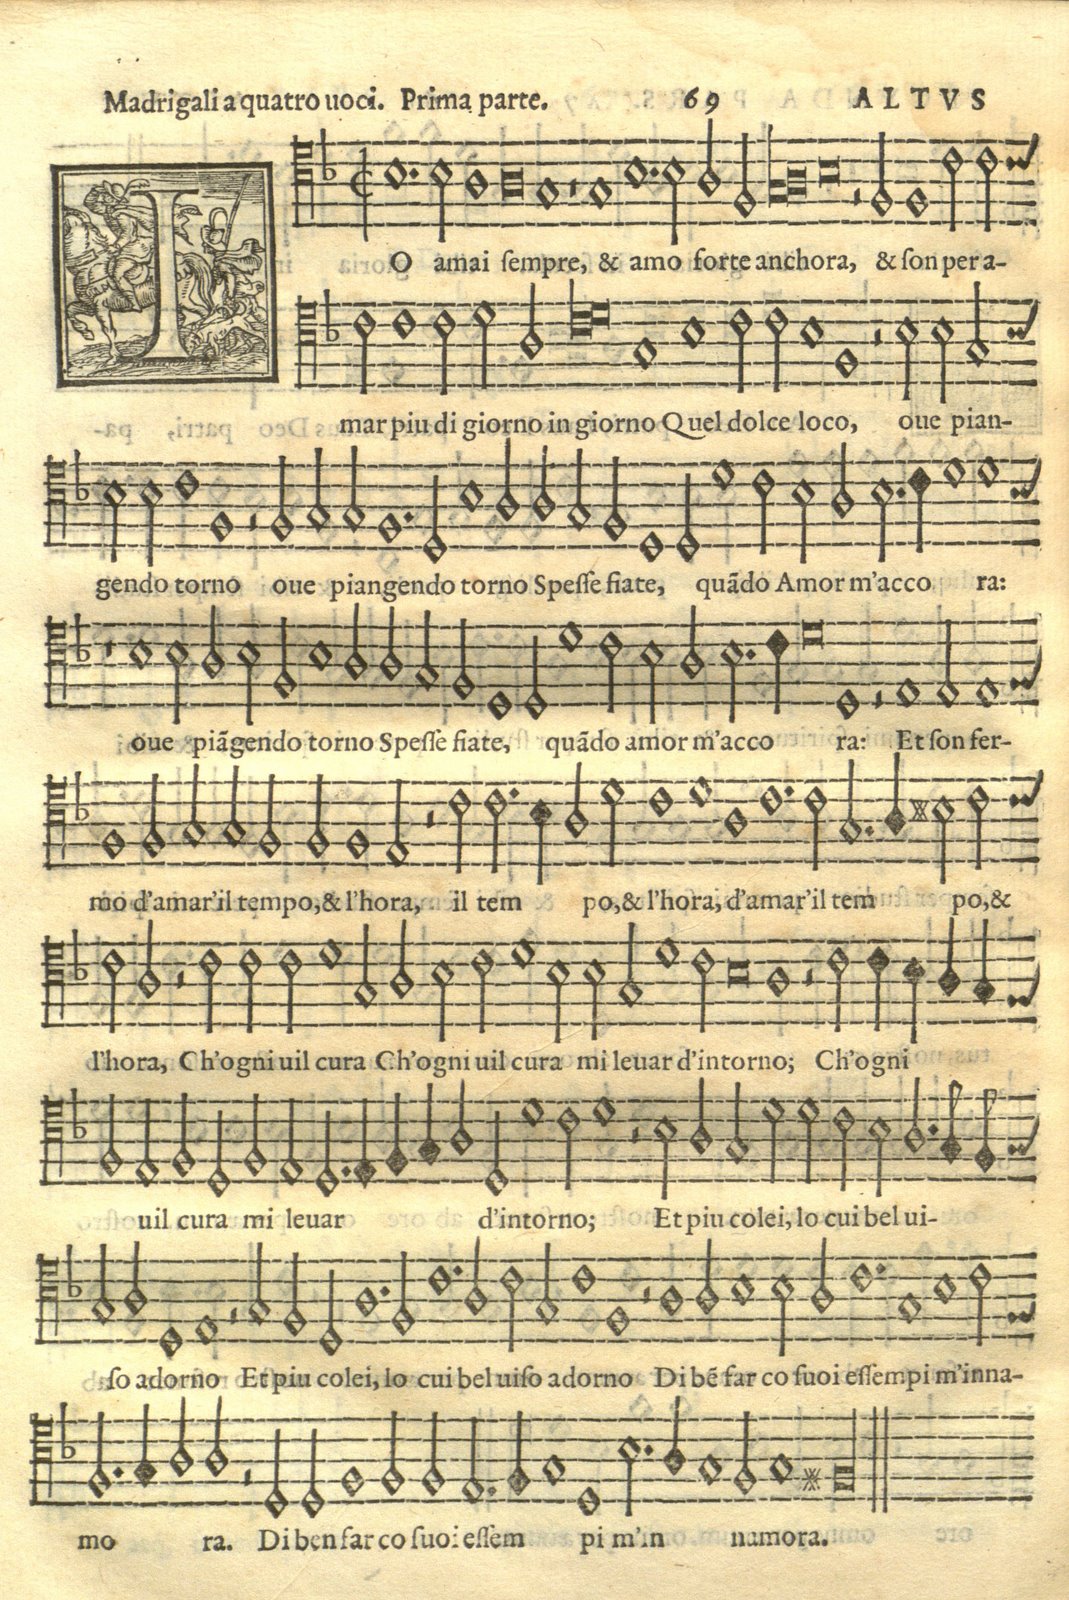 Page of the musical score for Madrigali a quatro voci